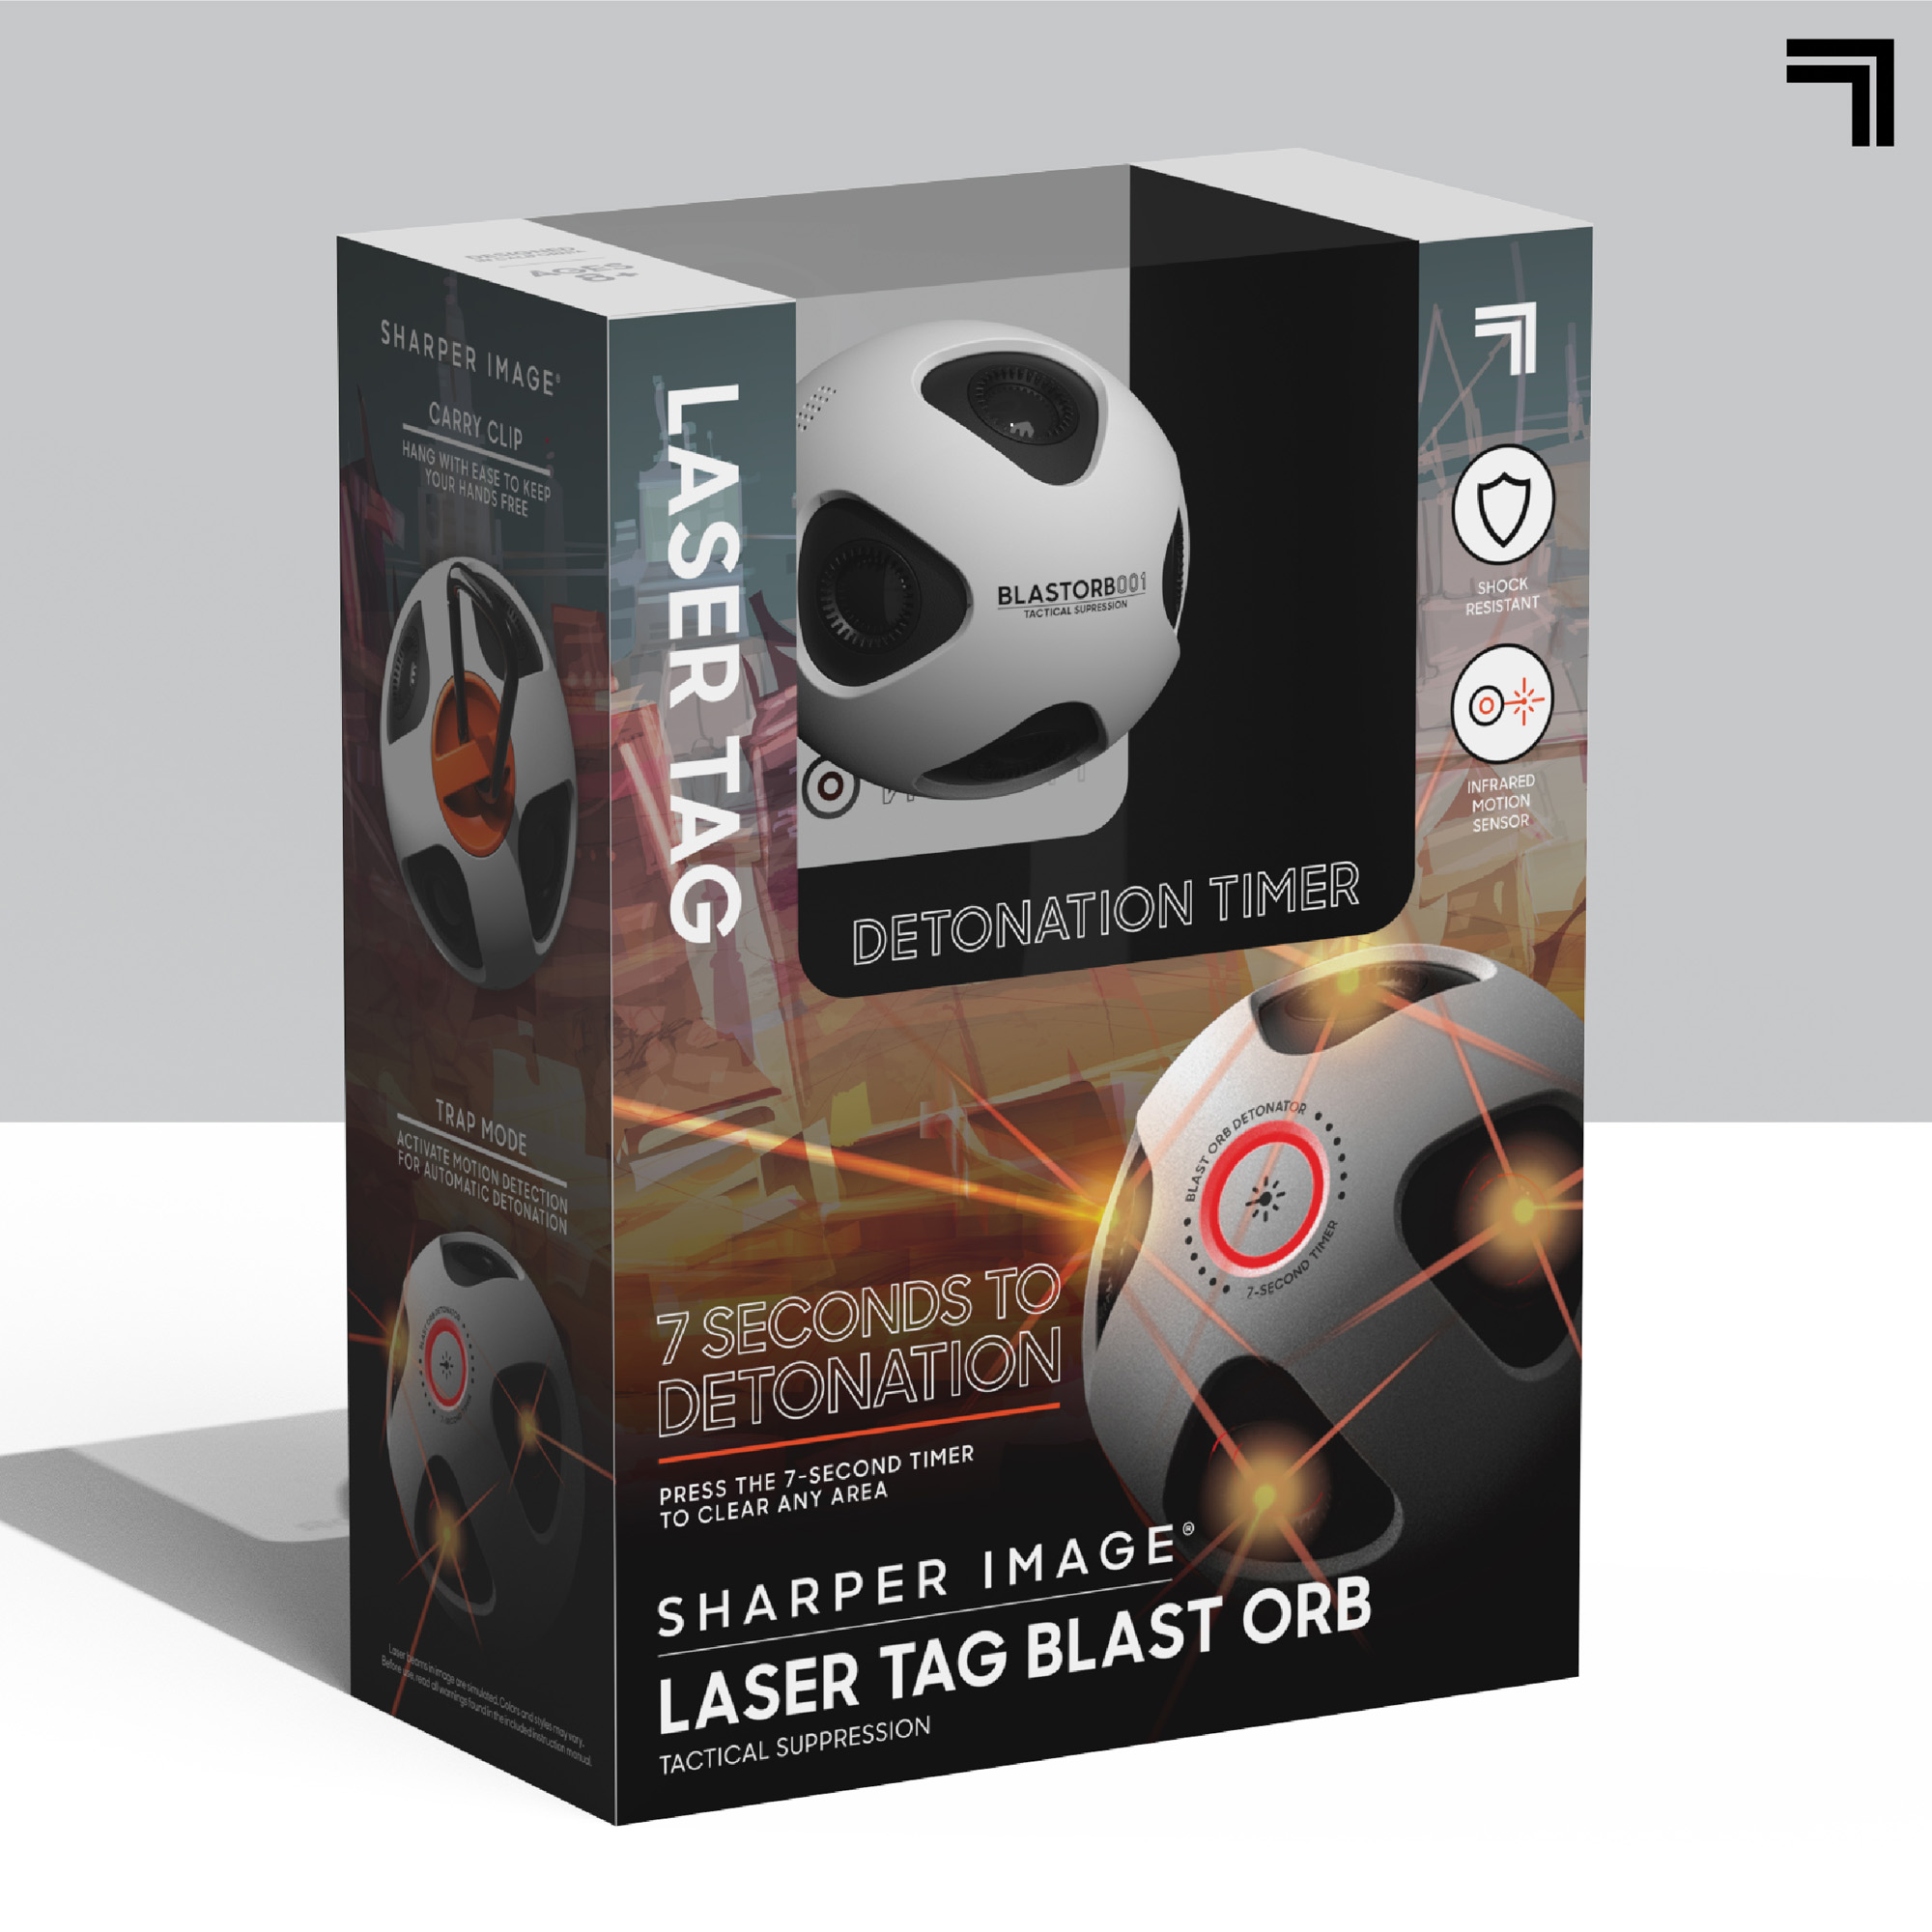 Sharper image - granata laser tag blast orb - Sharper Image